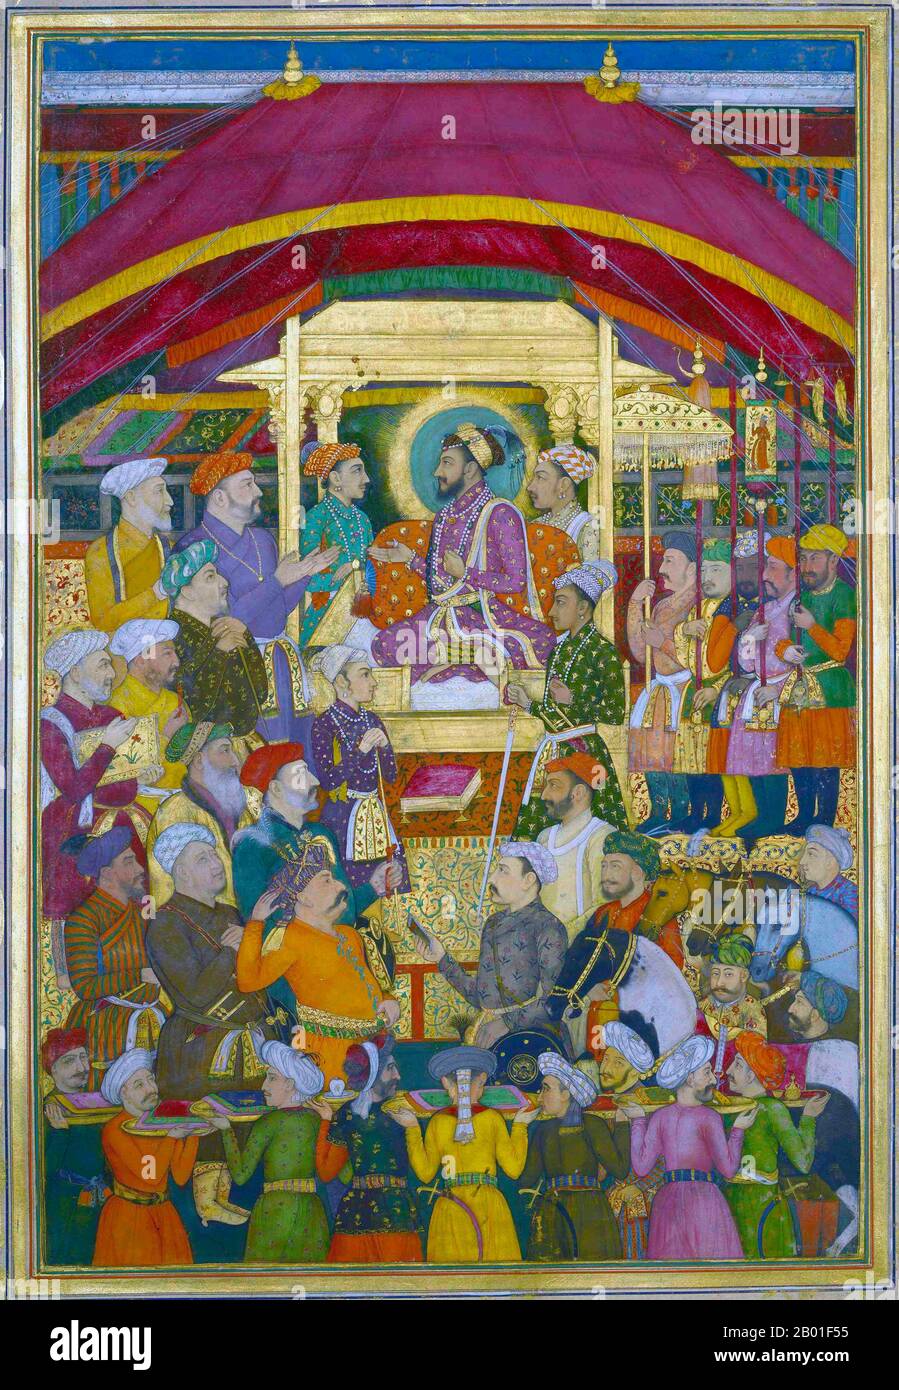 India: Shah Jahan (5 gennaio 1592 - 22 gennaio 1666) riceve l'ambasciatore persiano, MuhammadAli Beg, durante le celebrazioni di Capodanno. Acquerello di Jalal Quli (17th ° secolo), 1635-1650. Shah Jahan fu l'imperatore dell'Impero Mughal nel subcontinente indiano dal 1628 al 1658. Il nome Shah Jahan deriva dal persiano che significa "Re del mondo". Fu il quinto imperatore Mughal dopo Babur, Humayun, Akbar e Jahangir. Il periodo del suo regno fu l'età d'oro dell'architettura di Mughal. Shah Jahan eresse molti splendidi monumenti, il più famoso dei quali è il Taj Mahal. Foto Stock